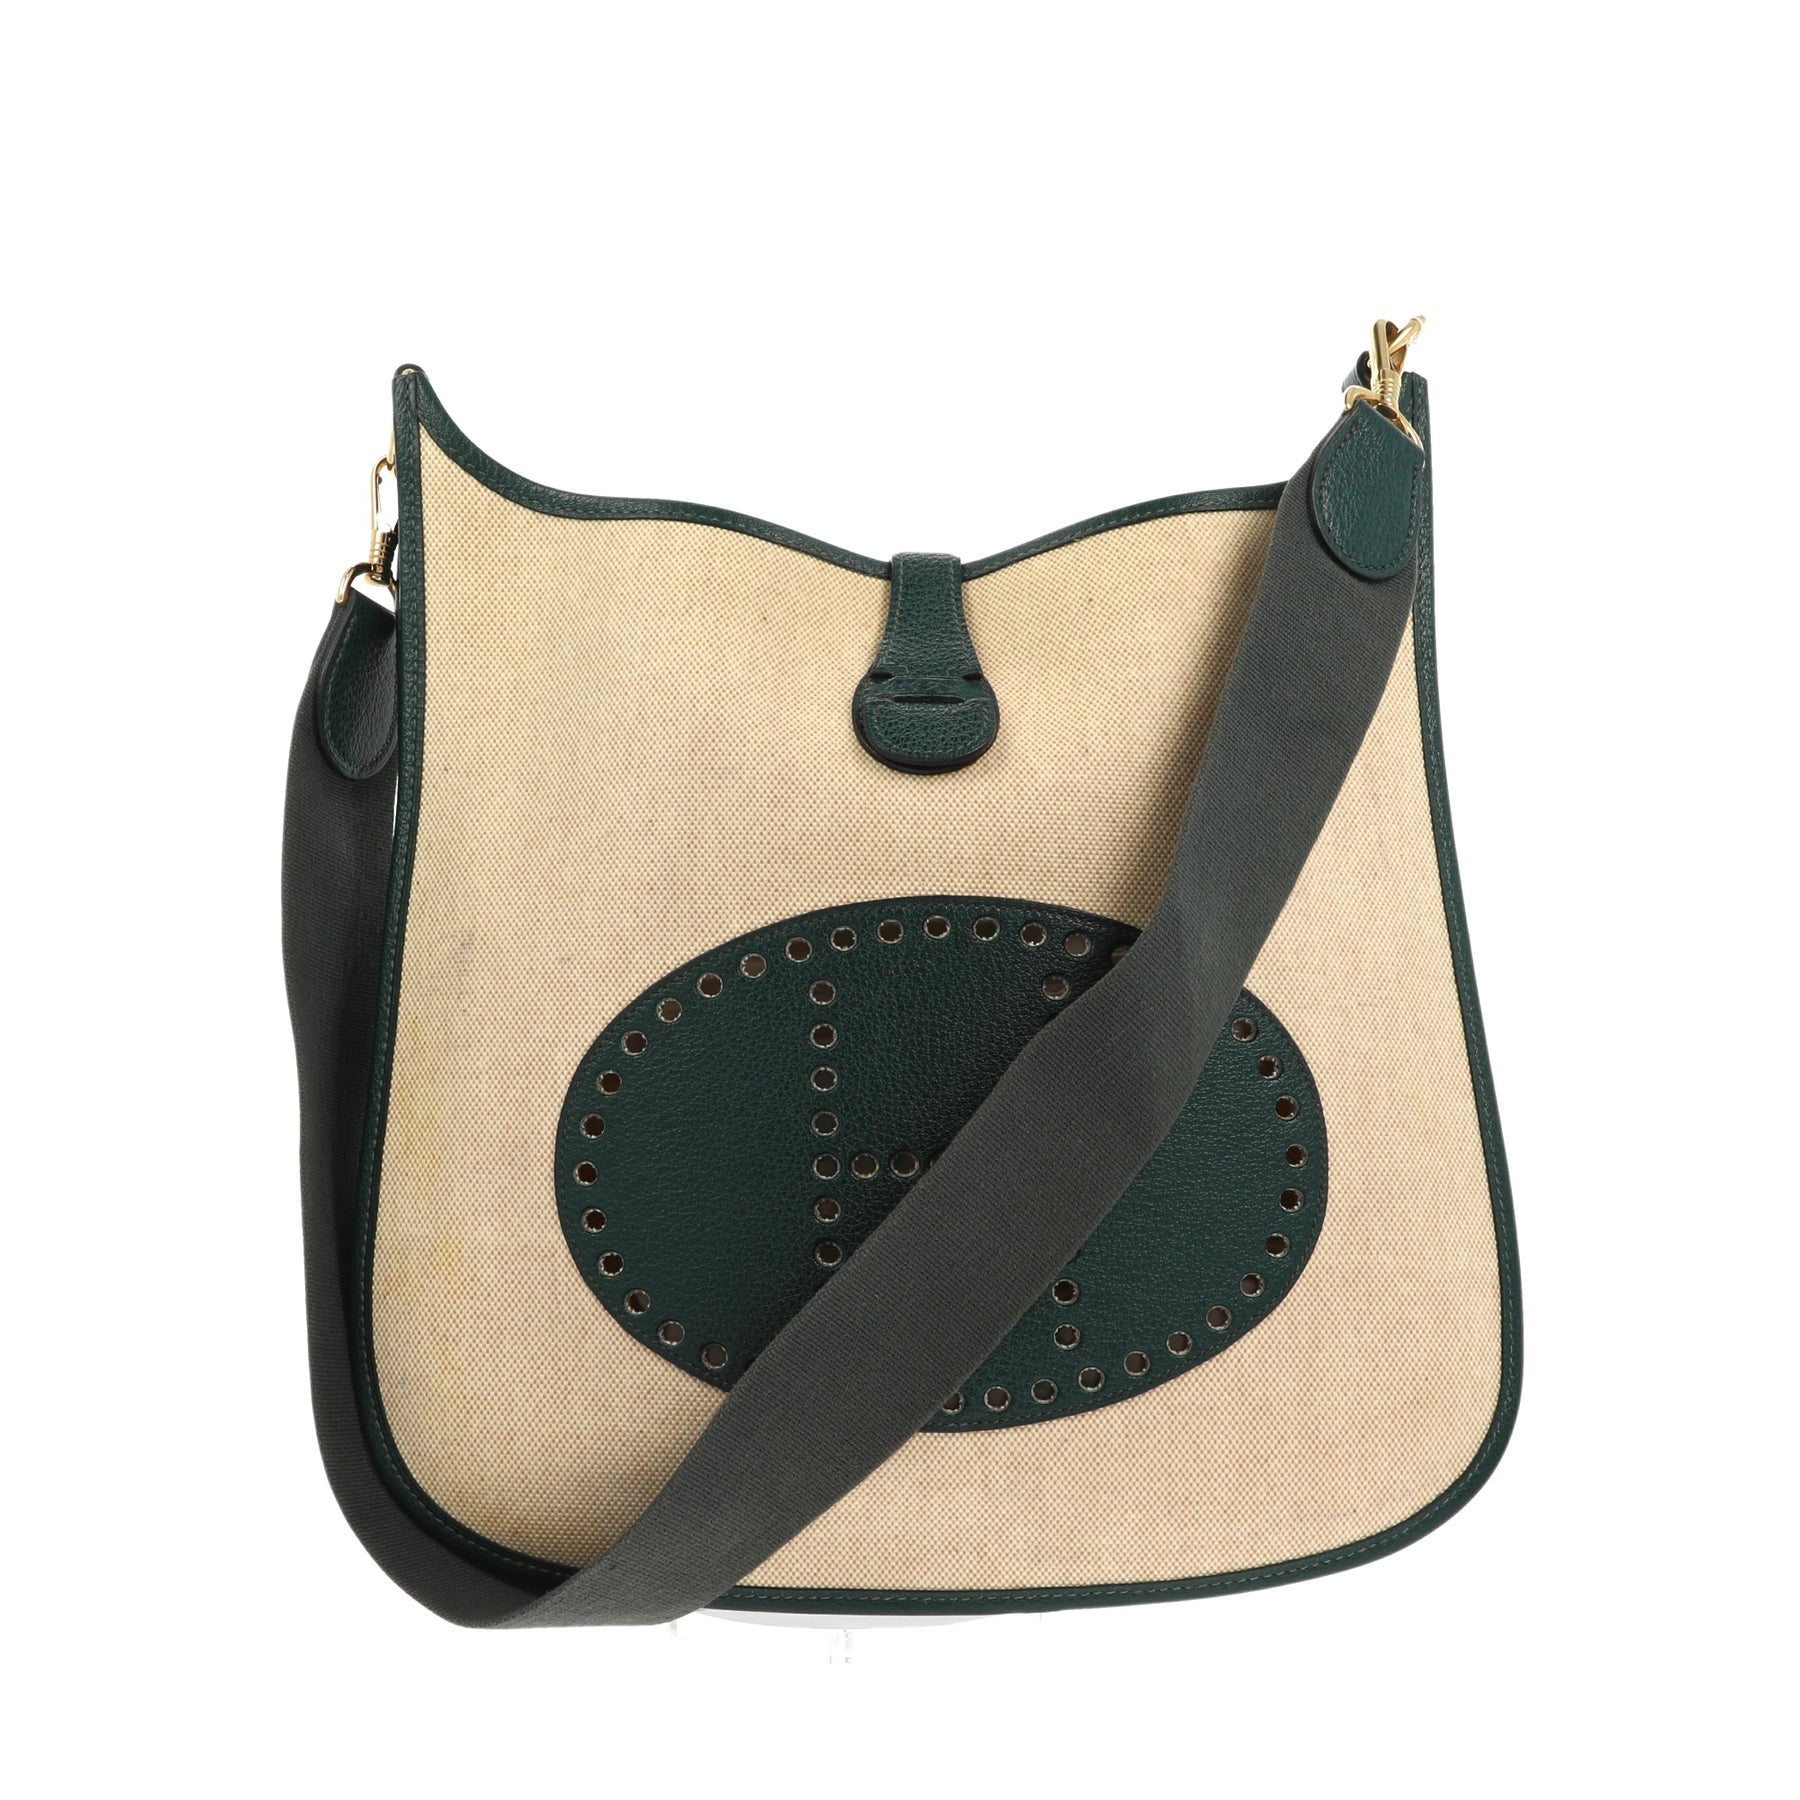 Instagram Russia  Hermes evelyn bag, Hermes handbags, Hermes bags